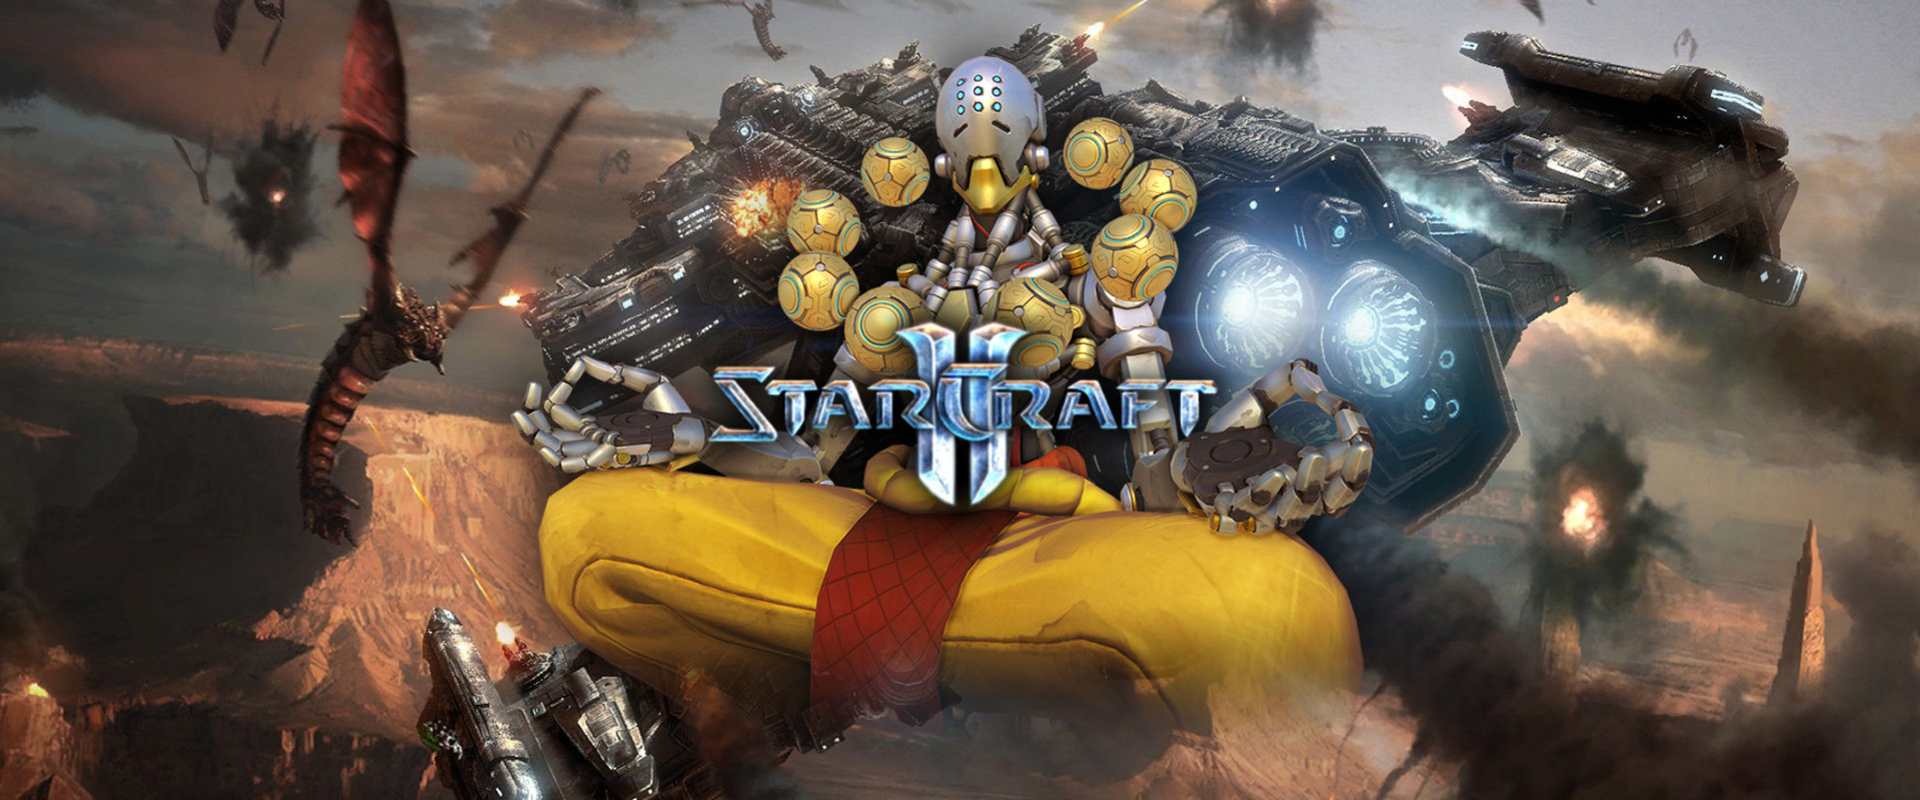 Egy rajongó megalkotta Zenyatta-t StarCraft egységként